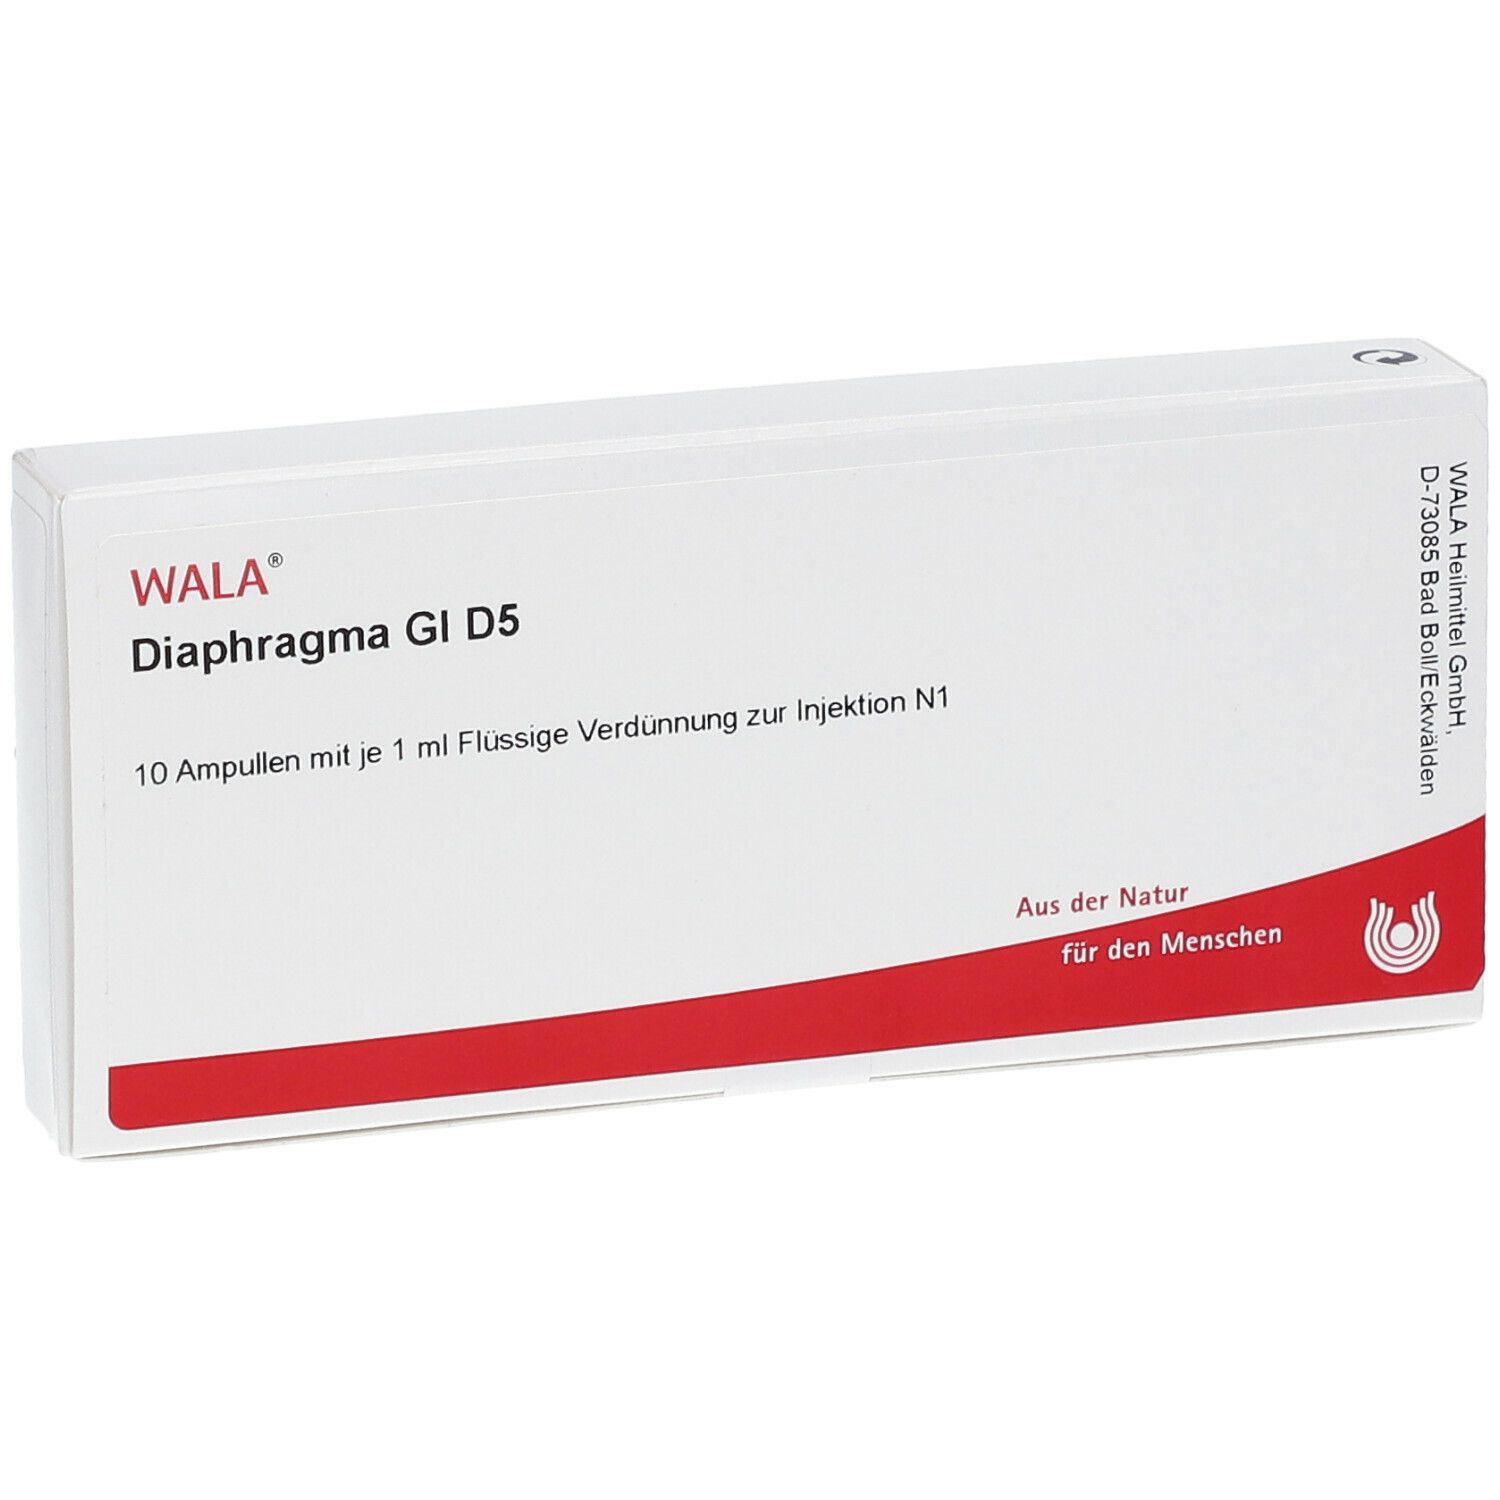 WALA® Diaphragma Gl D 5